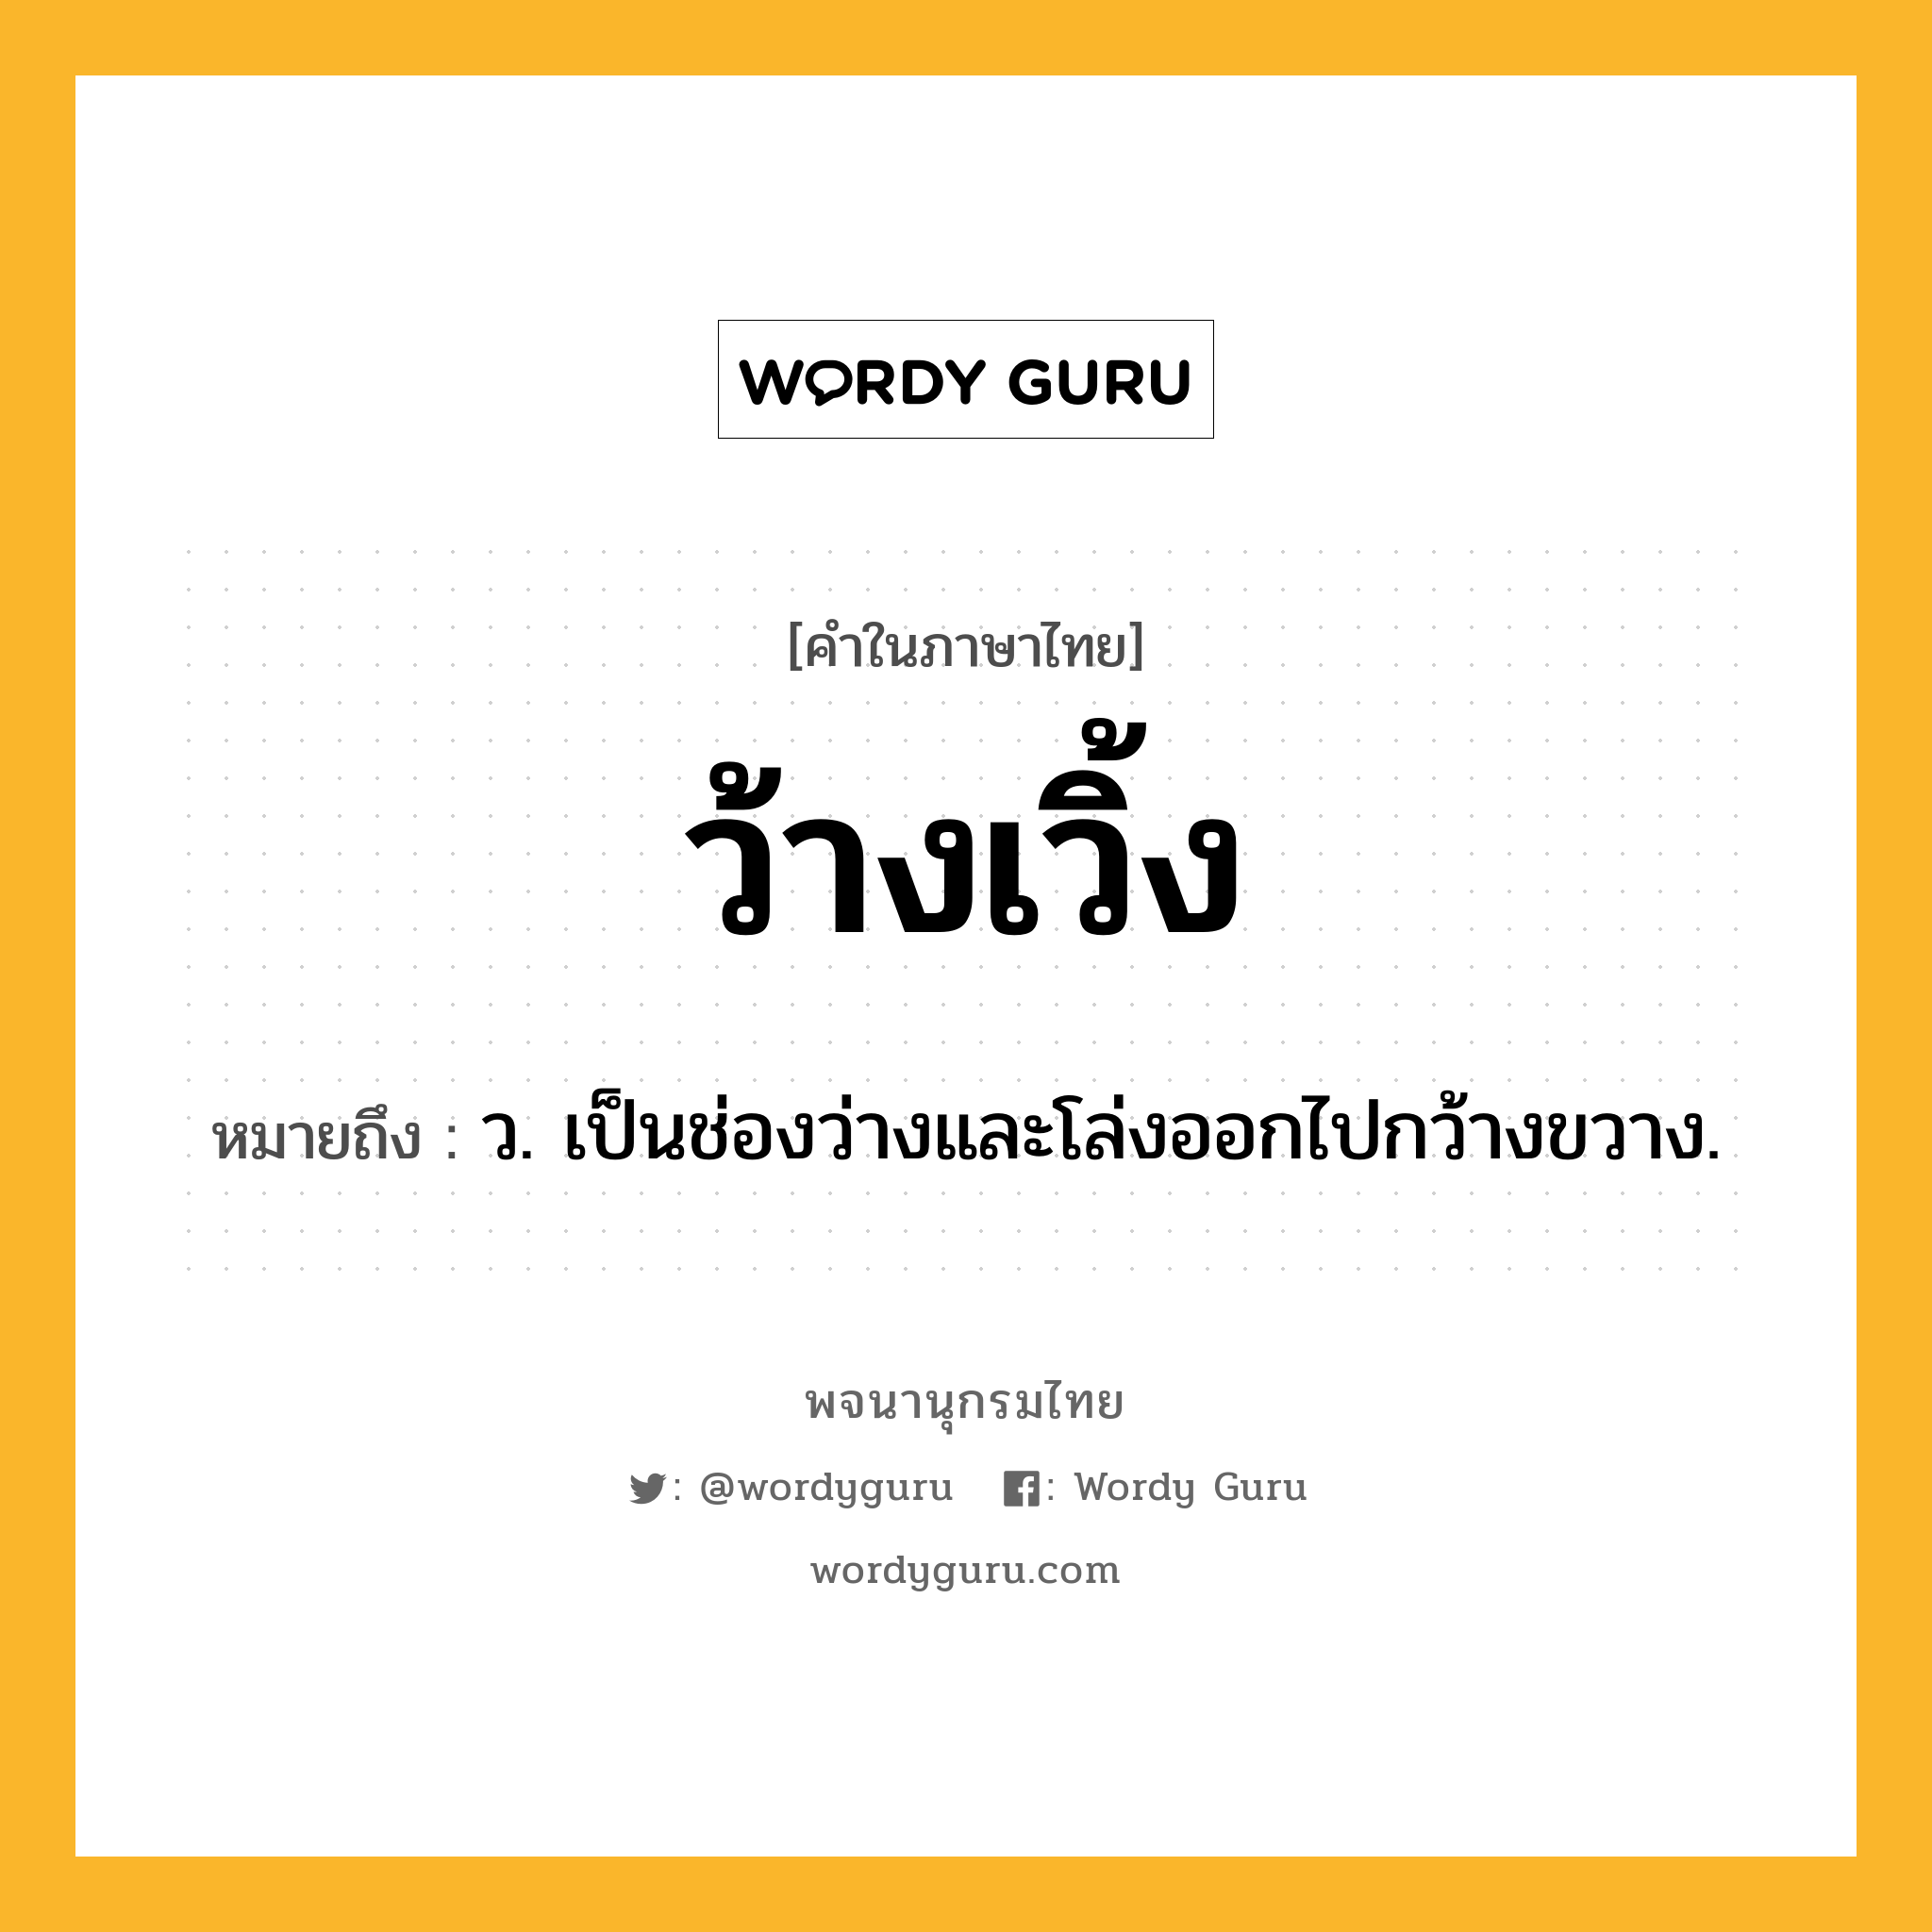 ว้างเวิ้ง หมายถึงอะไร?, คำในภาษาไทย ว้างเวิ้ง หมายถึง ว. เป็นช่องว่างและโล่งออกไปกว้างขวาง.